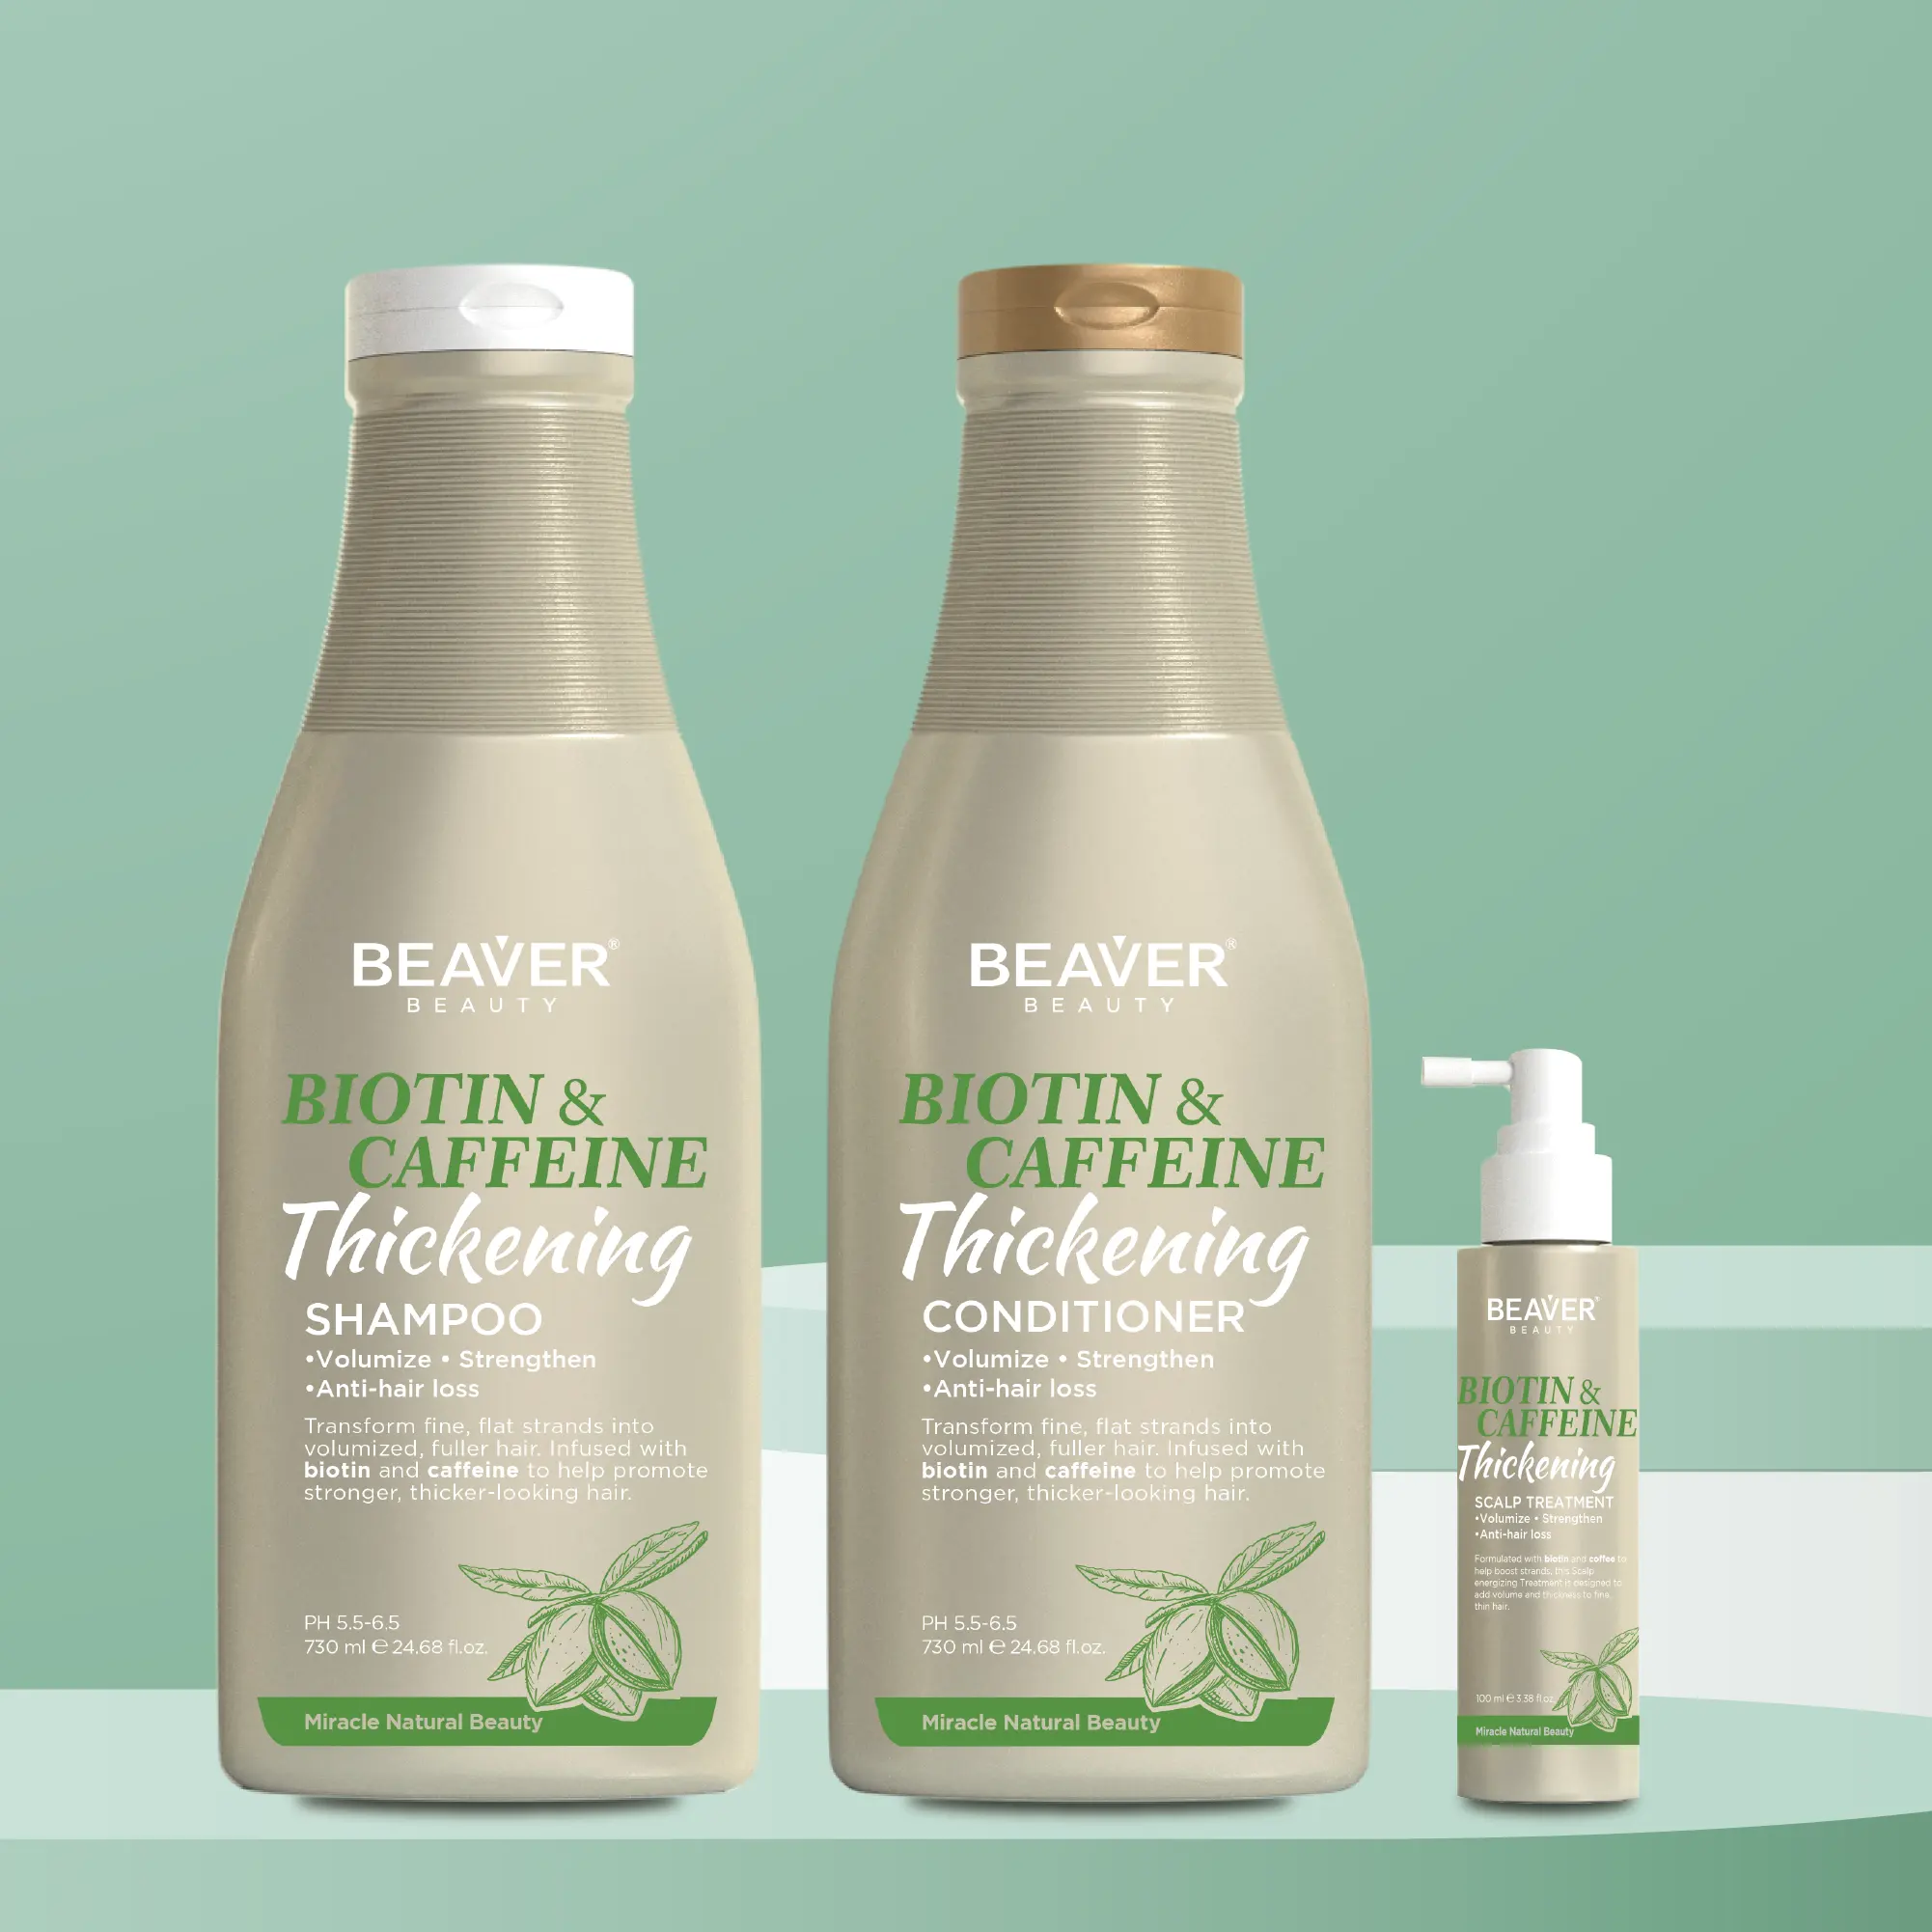 Beaver - Shampoo de ervas naturais para crescimento e crescimento dos cabelos, biotina e cafeína vegana, shampoo anti-queda de cabelo